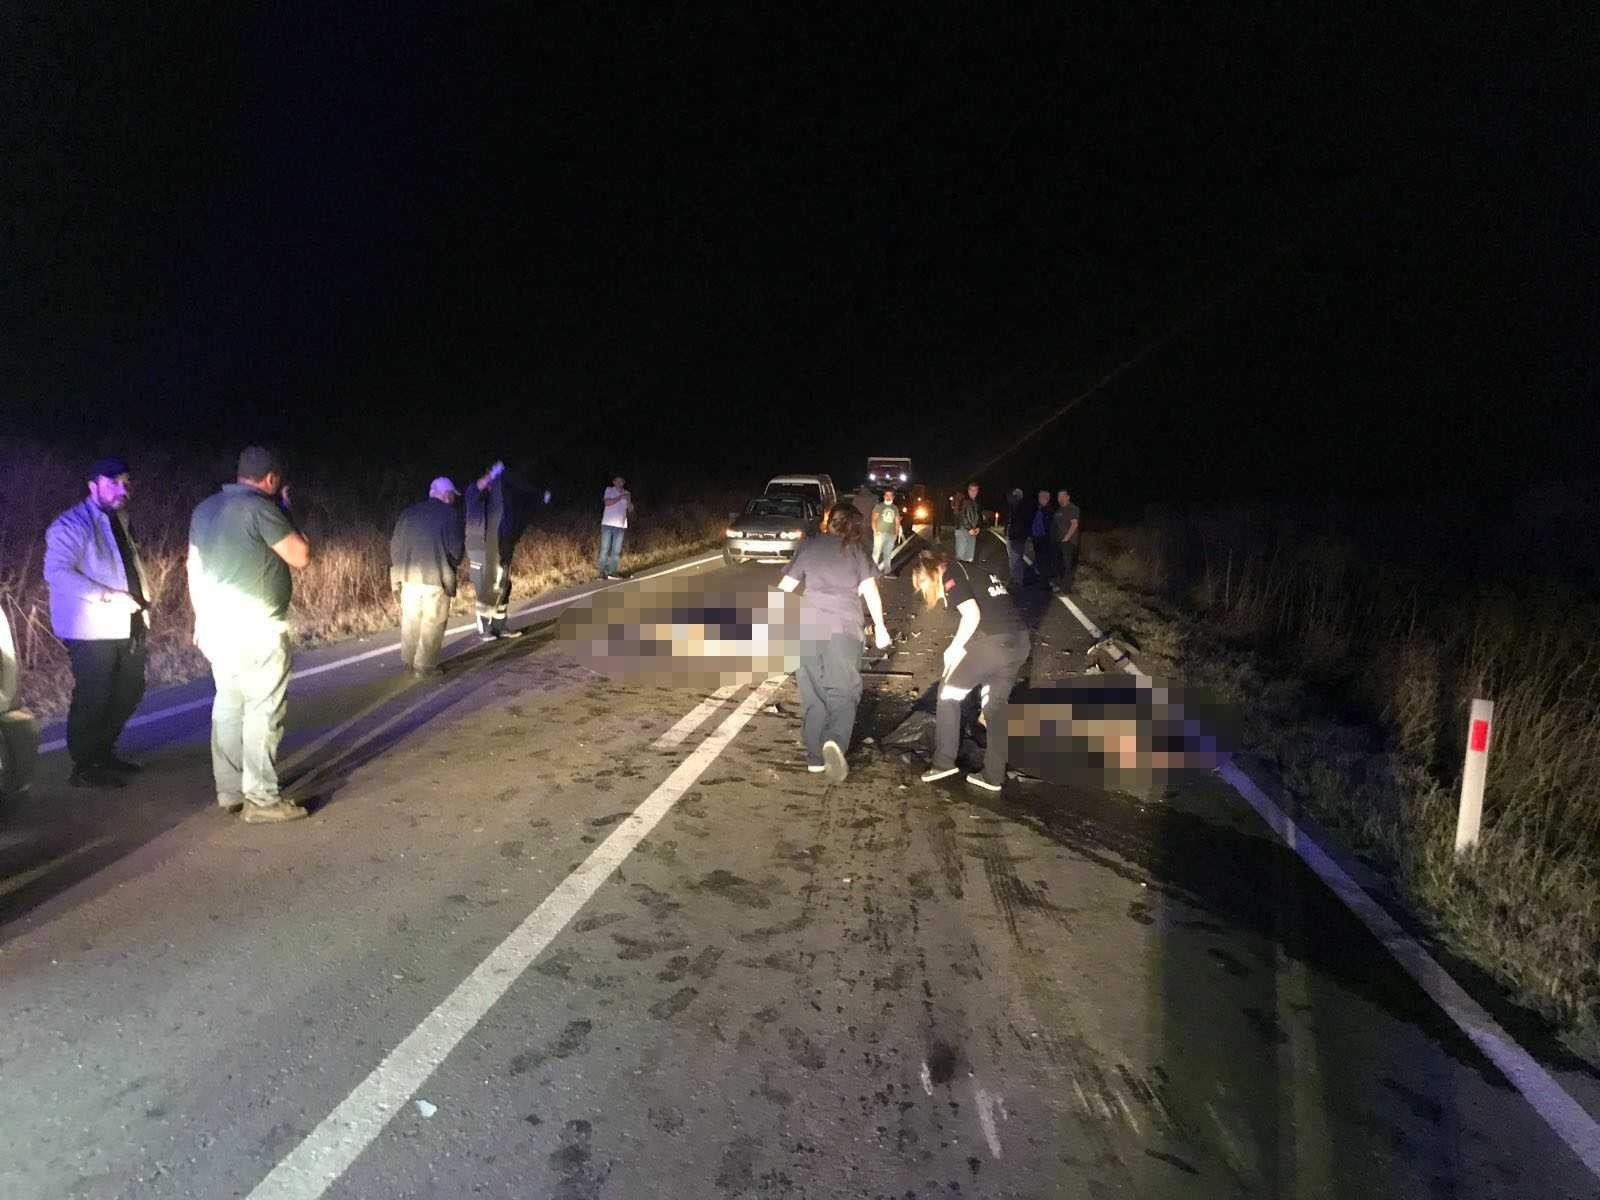 Edirne’de 2 kişinin öldüğü kazada otomobil önce yayalara sonra traktöre çarpmış #edirne